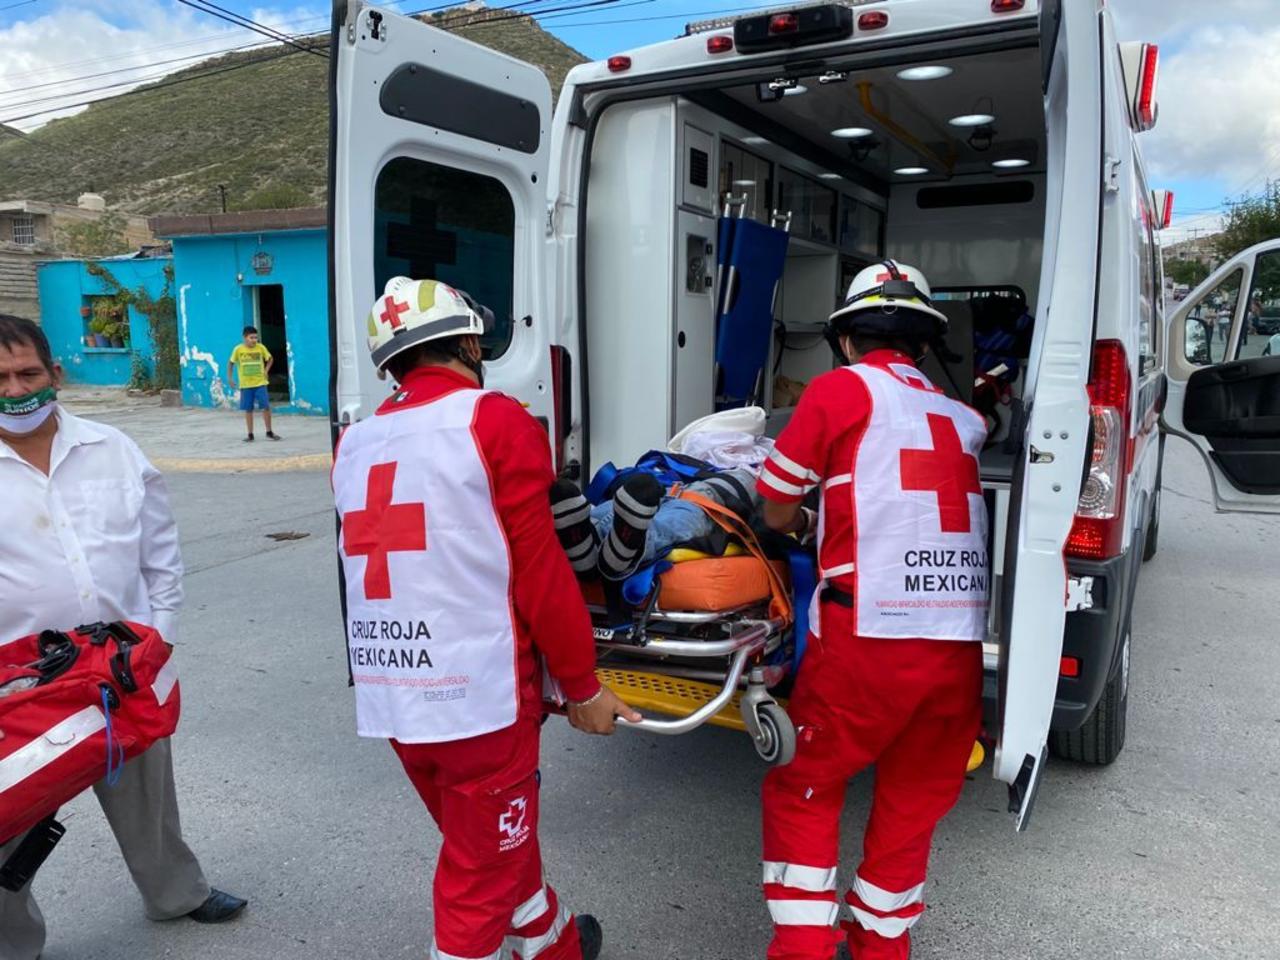 Al lugar acudieron paramédicos de Cruz Roja, quienes inmovilizaron al motociclista y lo trasladaron de emergencia a la Clínica 1 del IMSS, donde se reporta su estado de salud como grave.

